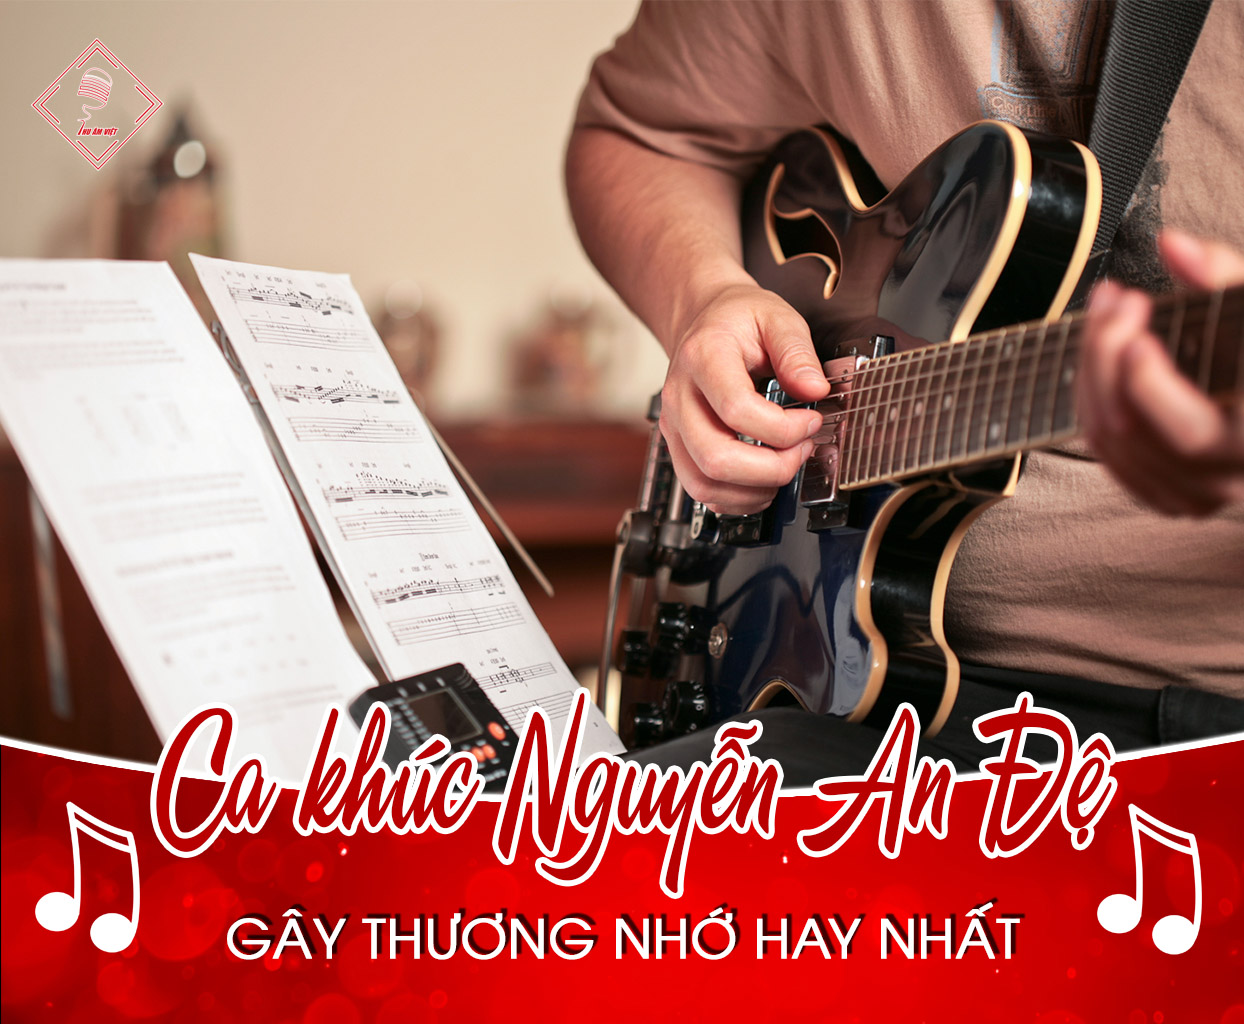 Top 7 ca khúc Nguyễn An Đệ sáng tác gây thương nhớ hay nhất